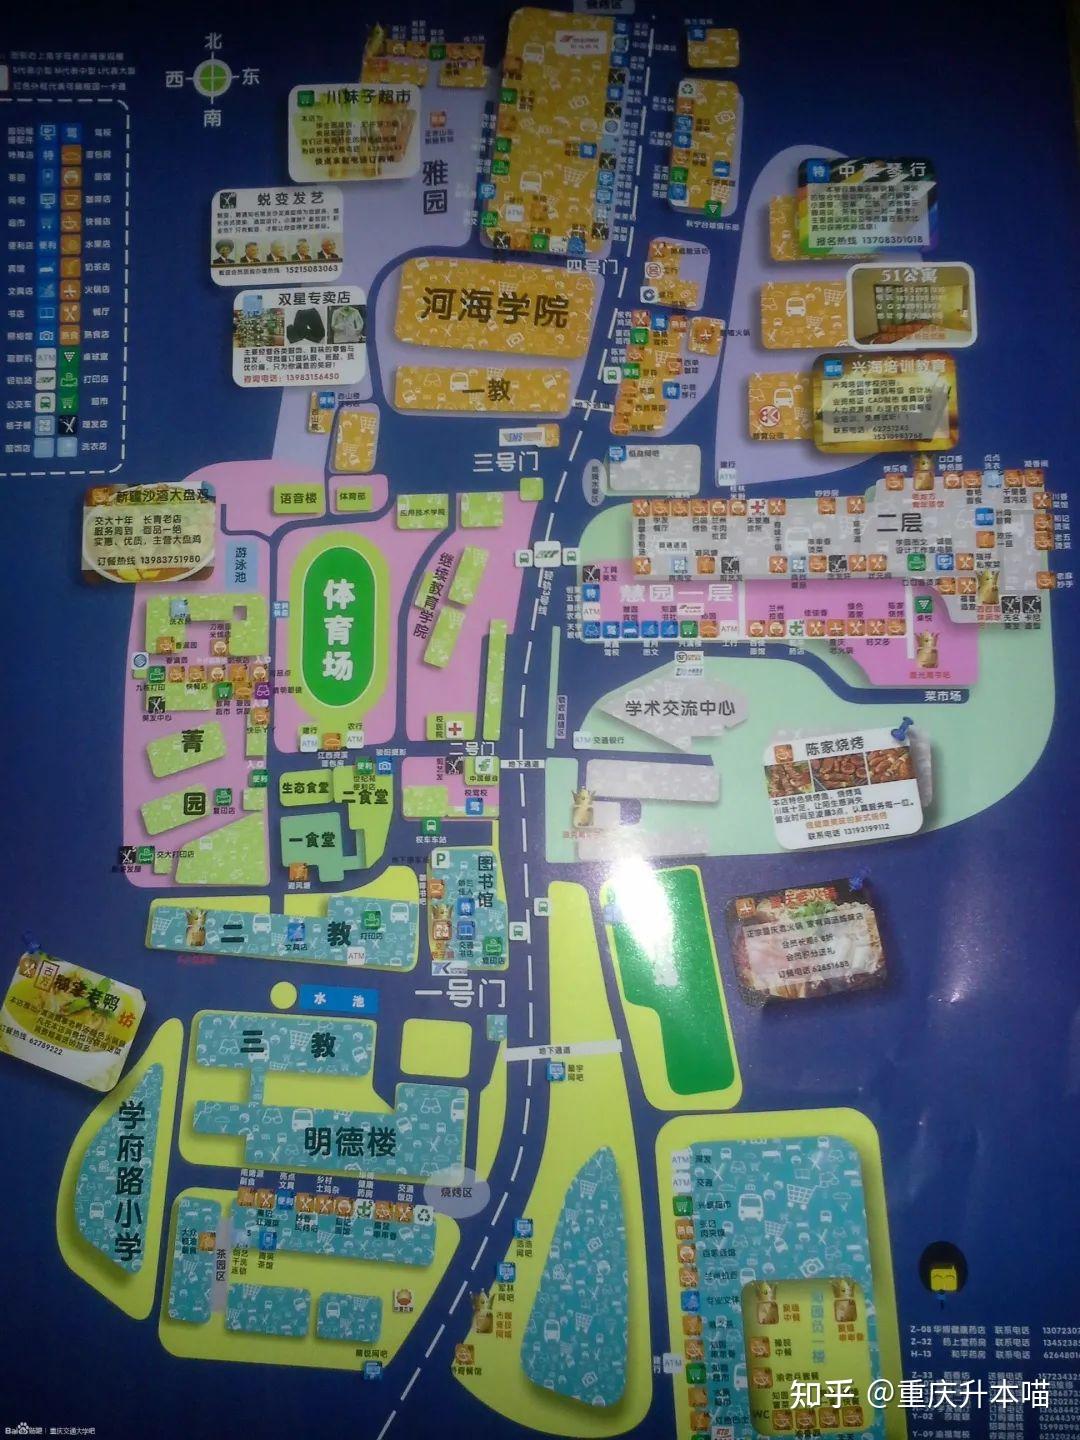 重庆交通大学知园图片